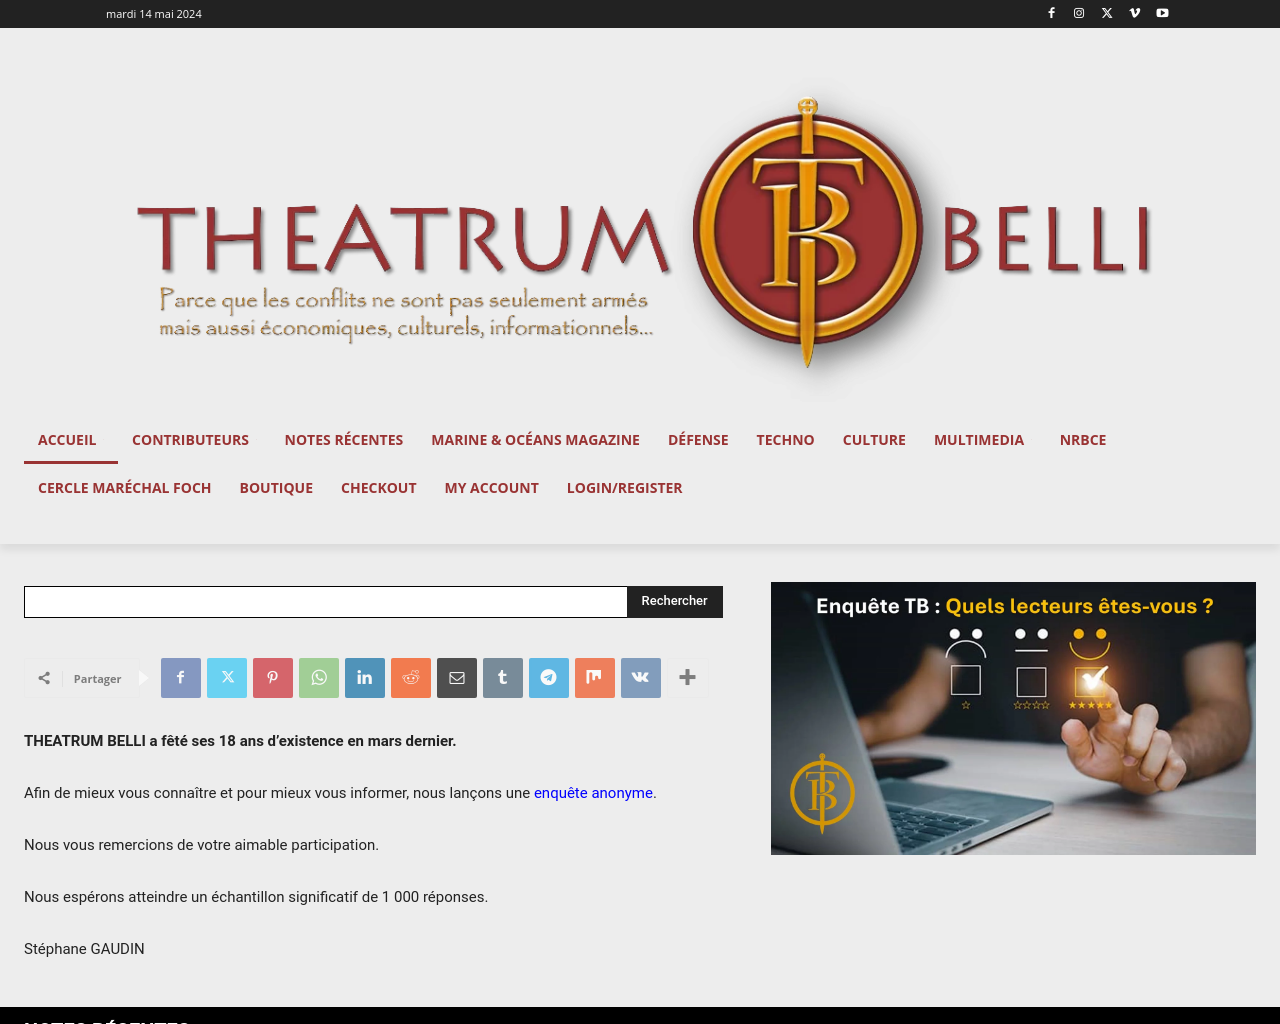 theatrum-belli.com